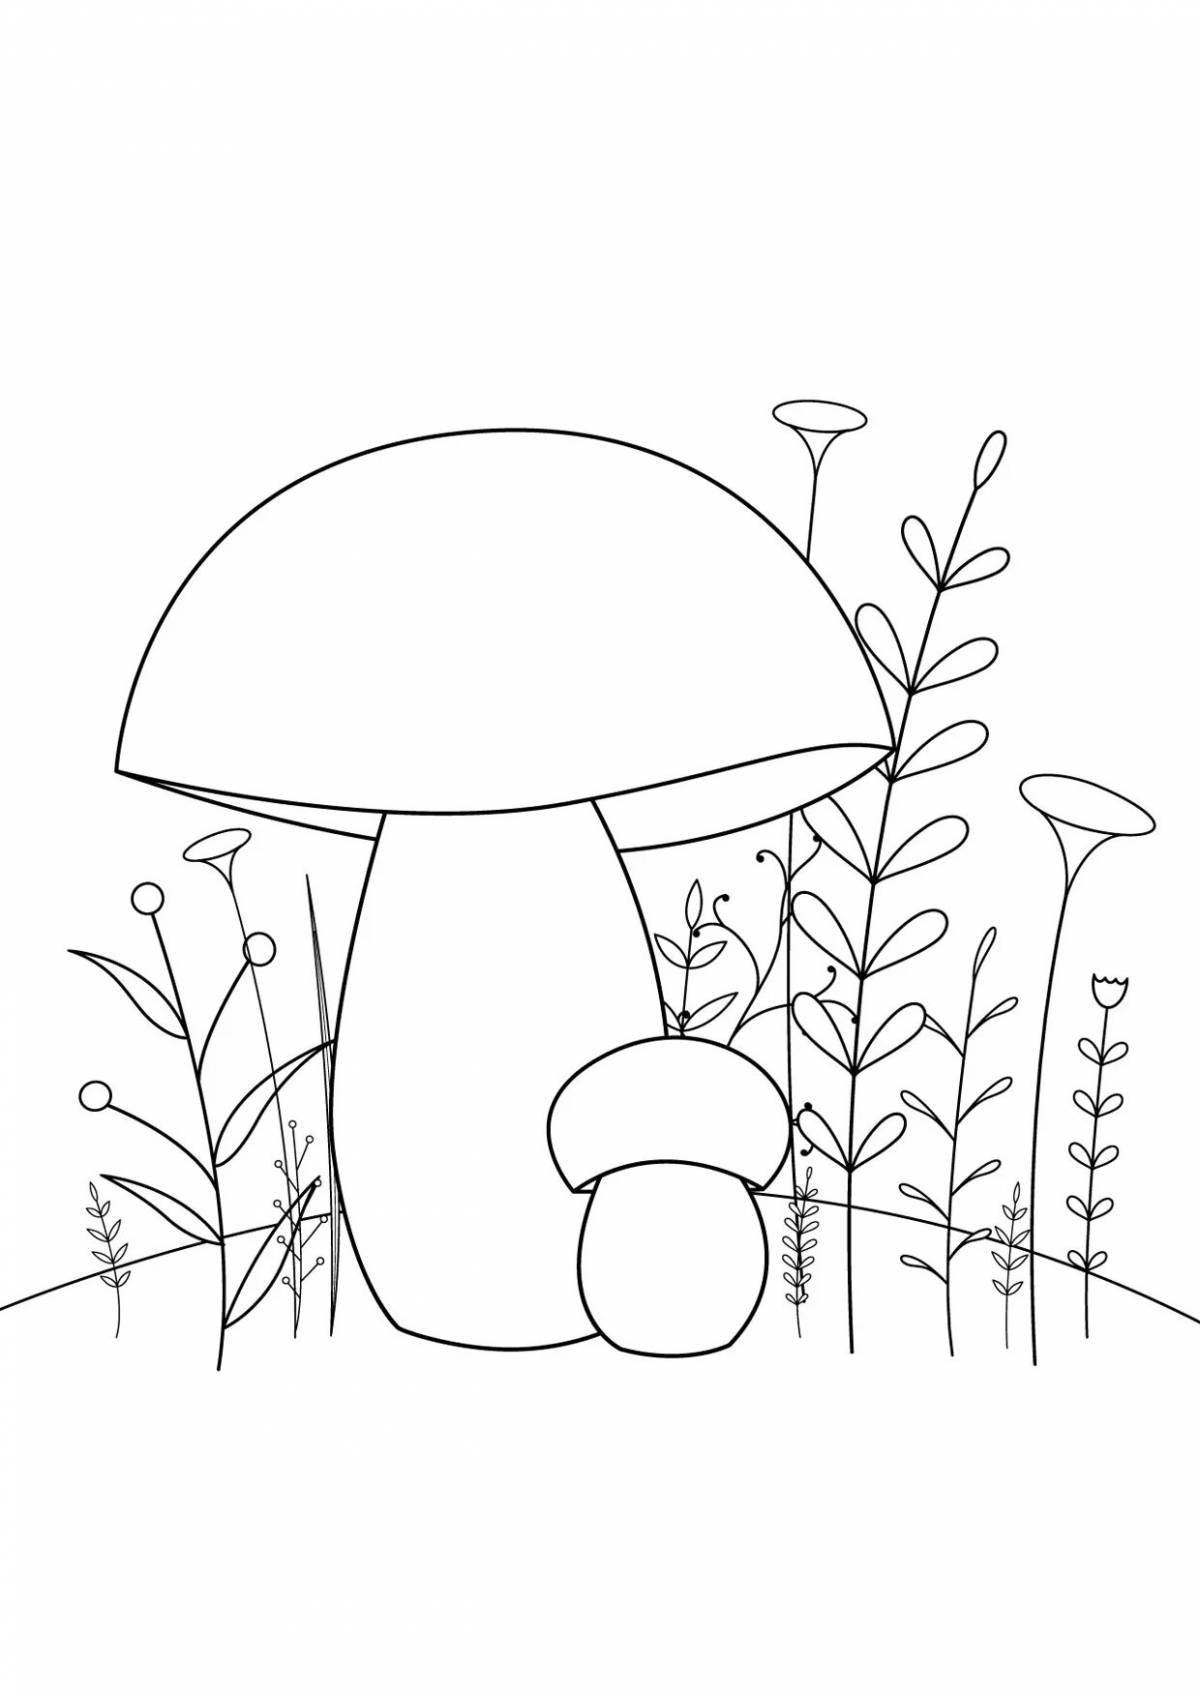 Красочная страница раскраски грибов подберезовики